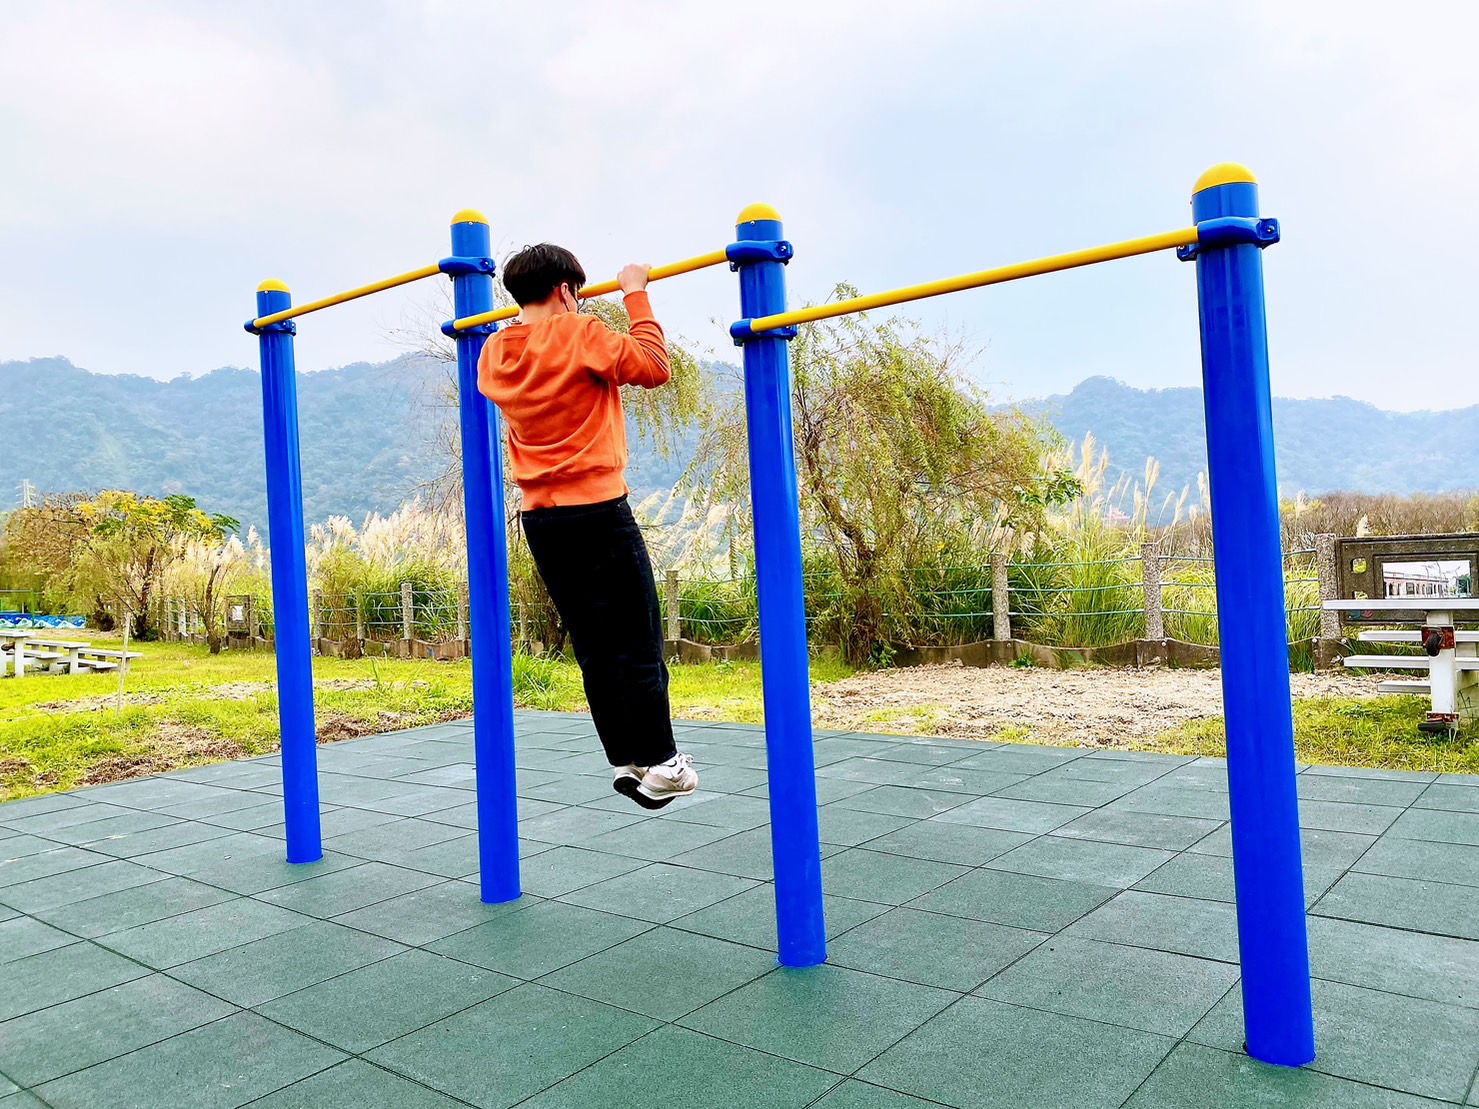 鶯歌山水步道體健及遊具設施-鍛鍊上肢的單槓運動.jpg